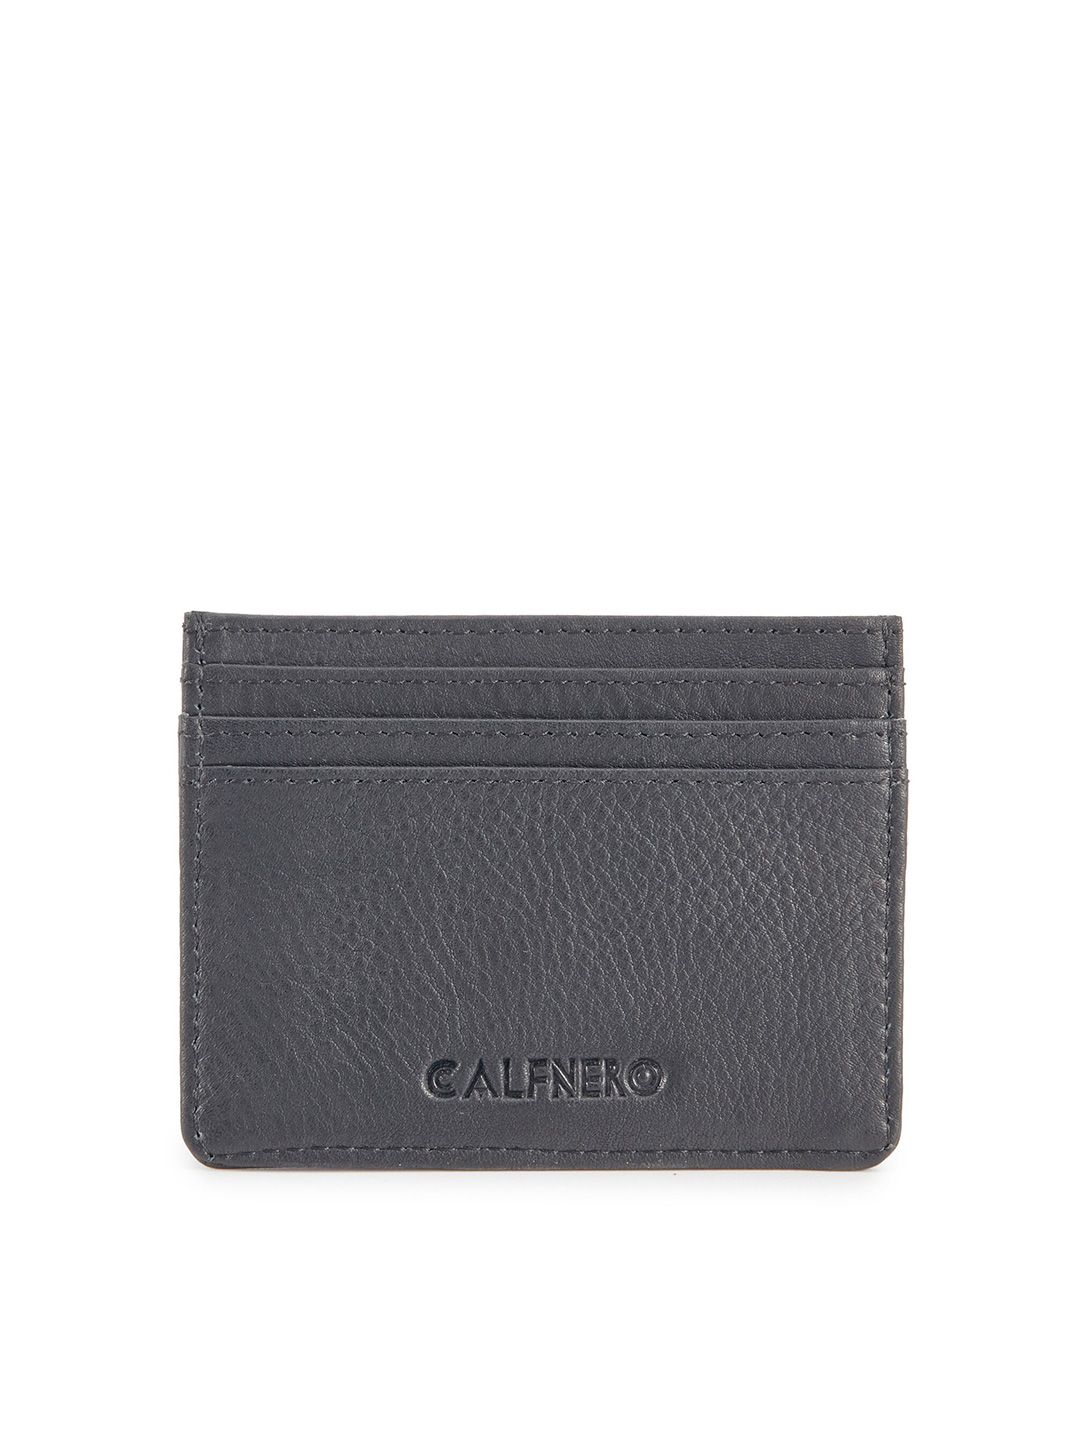 CALFNERO Unisex Black Leather Card Holder Price in India